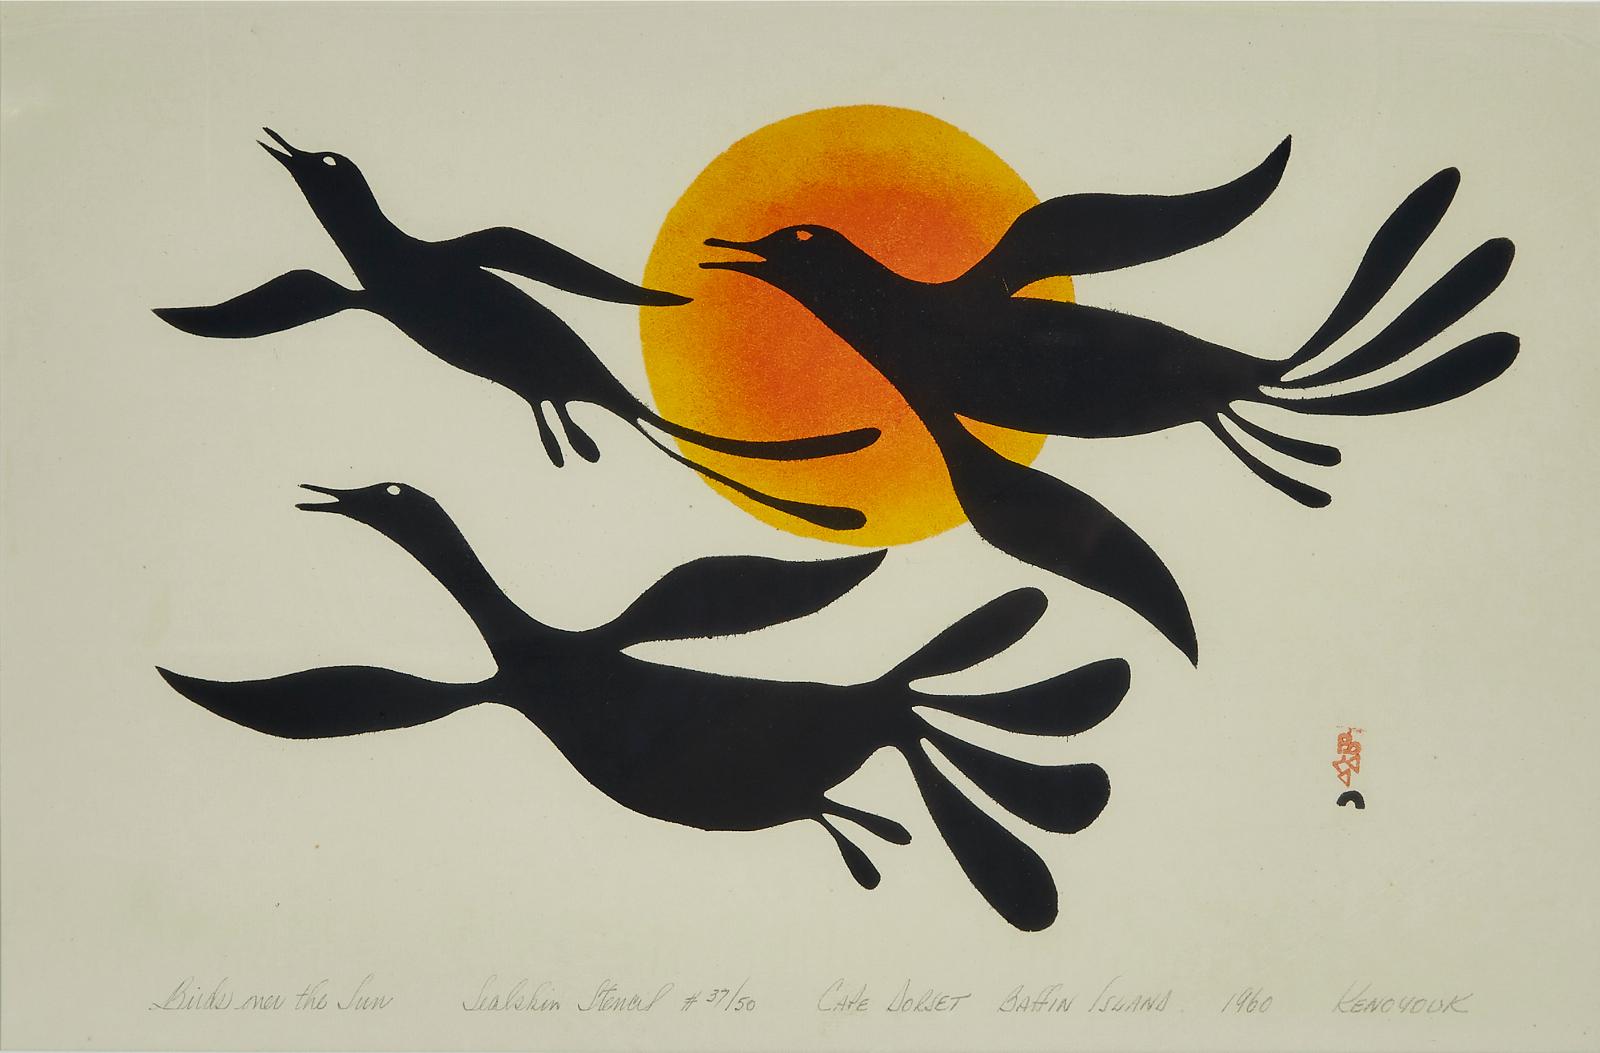 Kenojuak Ashevak (1927-2013) - Birds Over The Sun